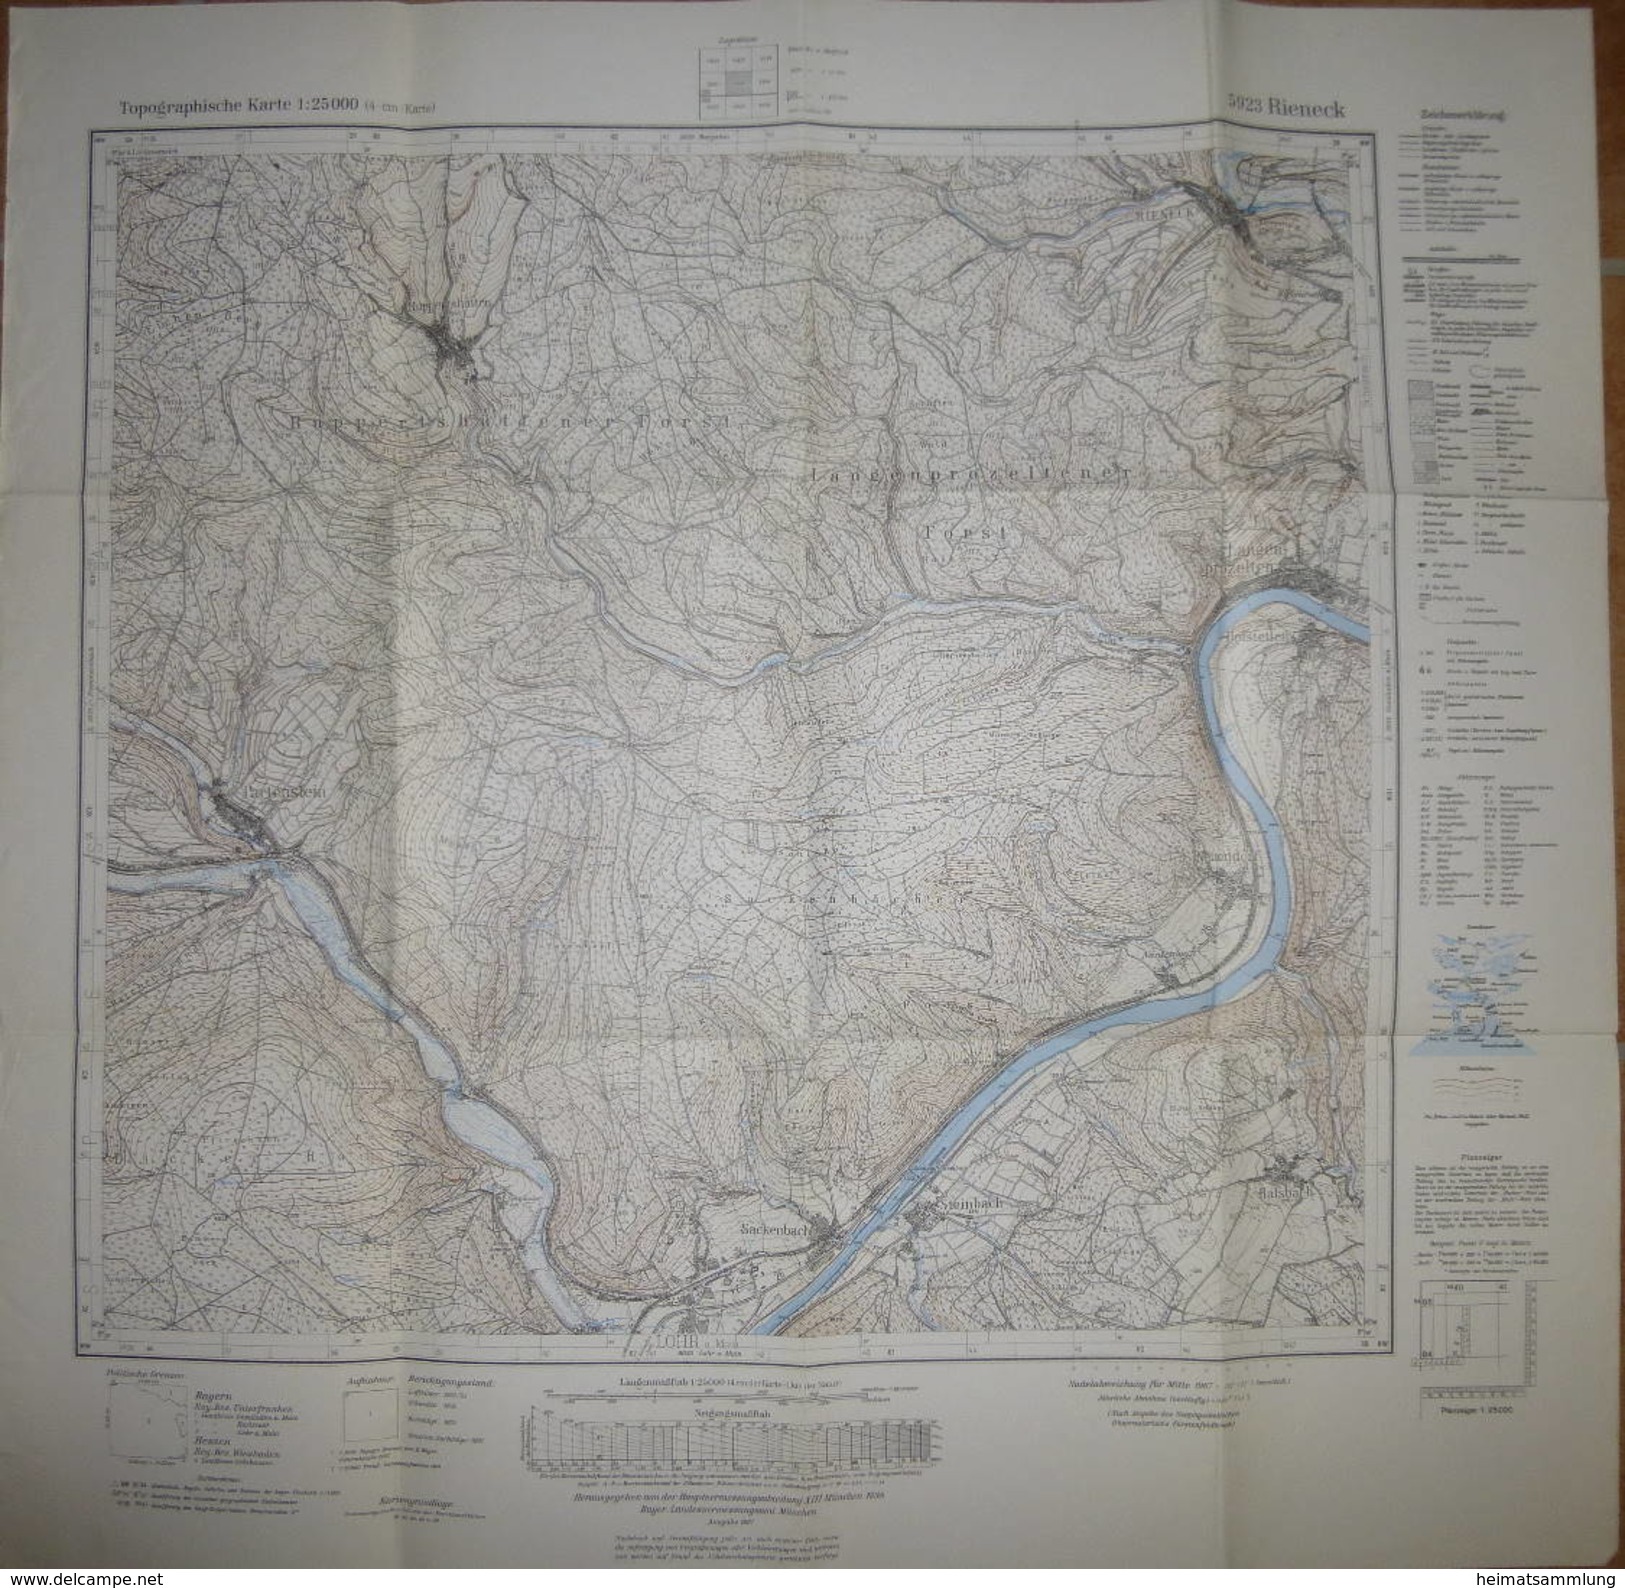 Rieneck 1967 - Topographische Karte 5923 - Maßstab 1:25'000 60cm X 61cm - Topographische Karten